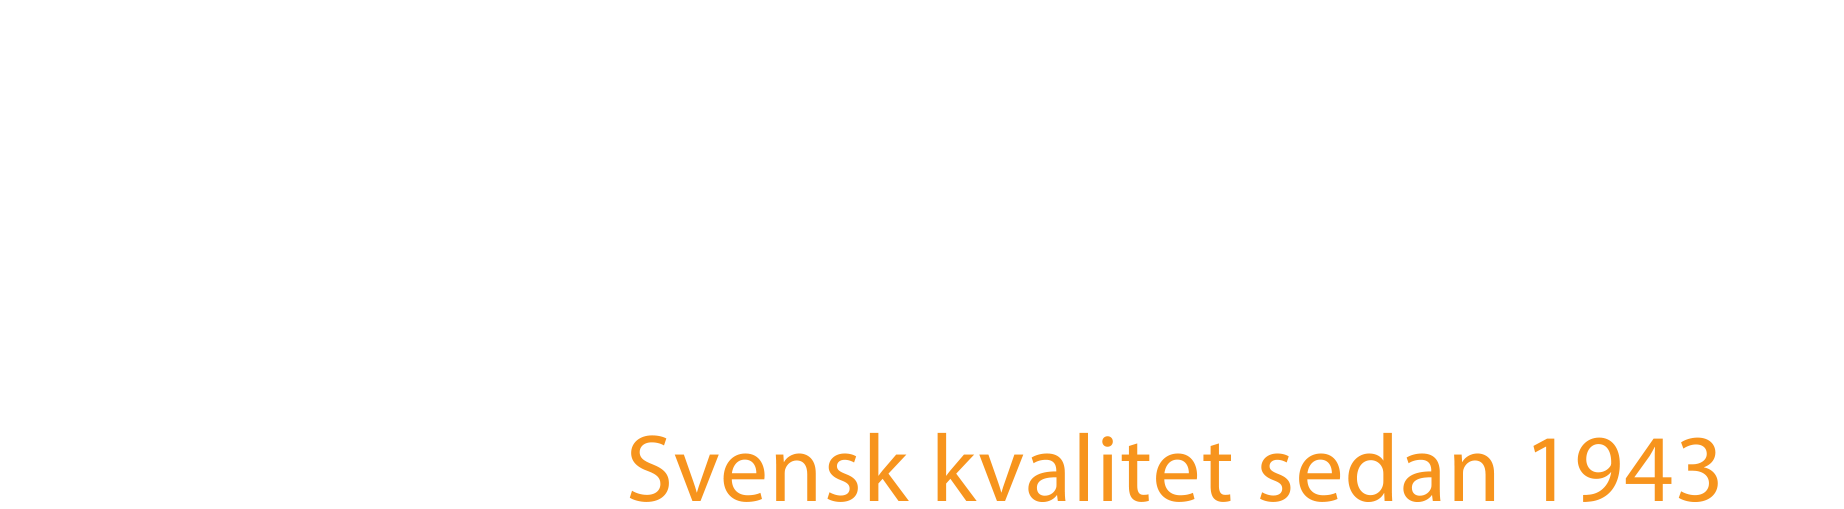 Logo_Norje_1943_PMS534